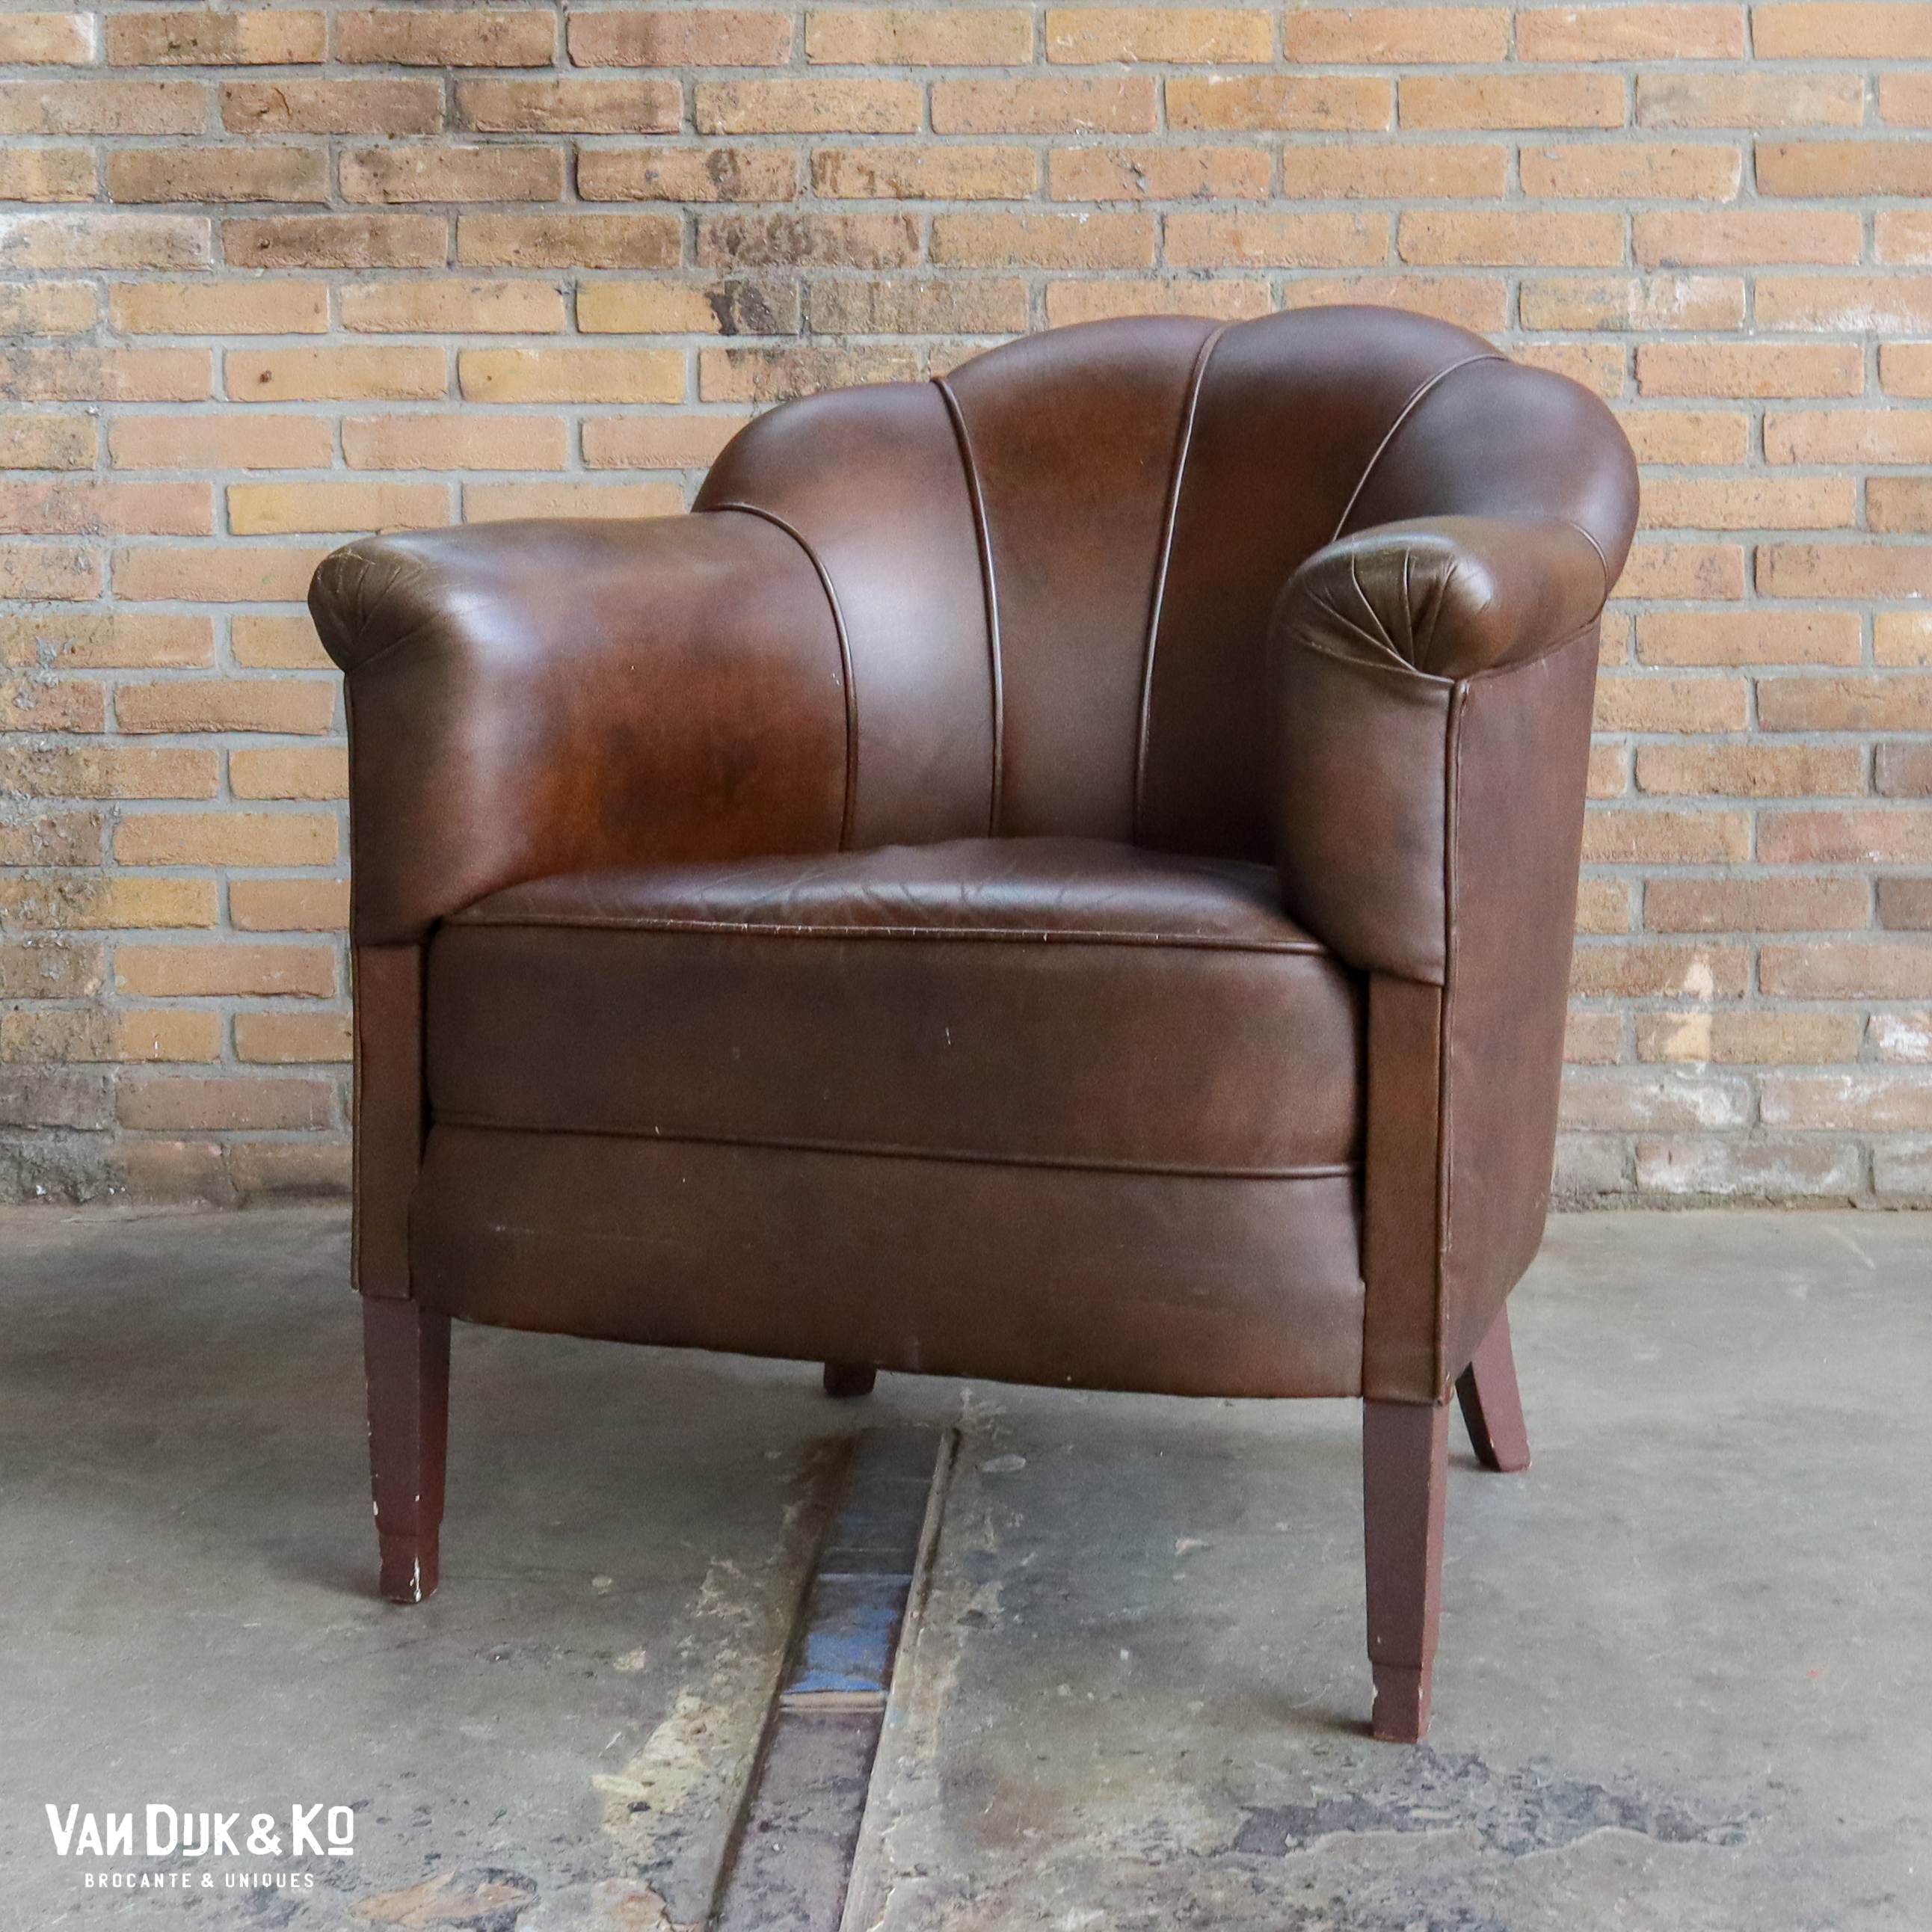 mineraal Antecedent harpoen Vintage leren fauteuil » Van Dijk & Ko